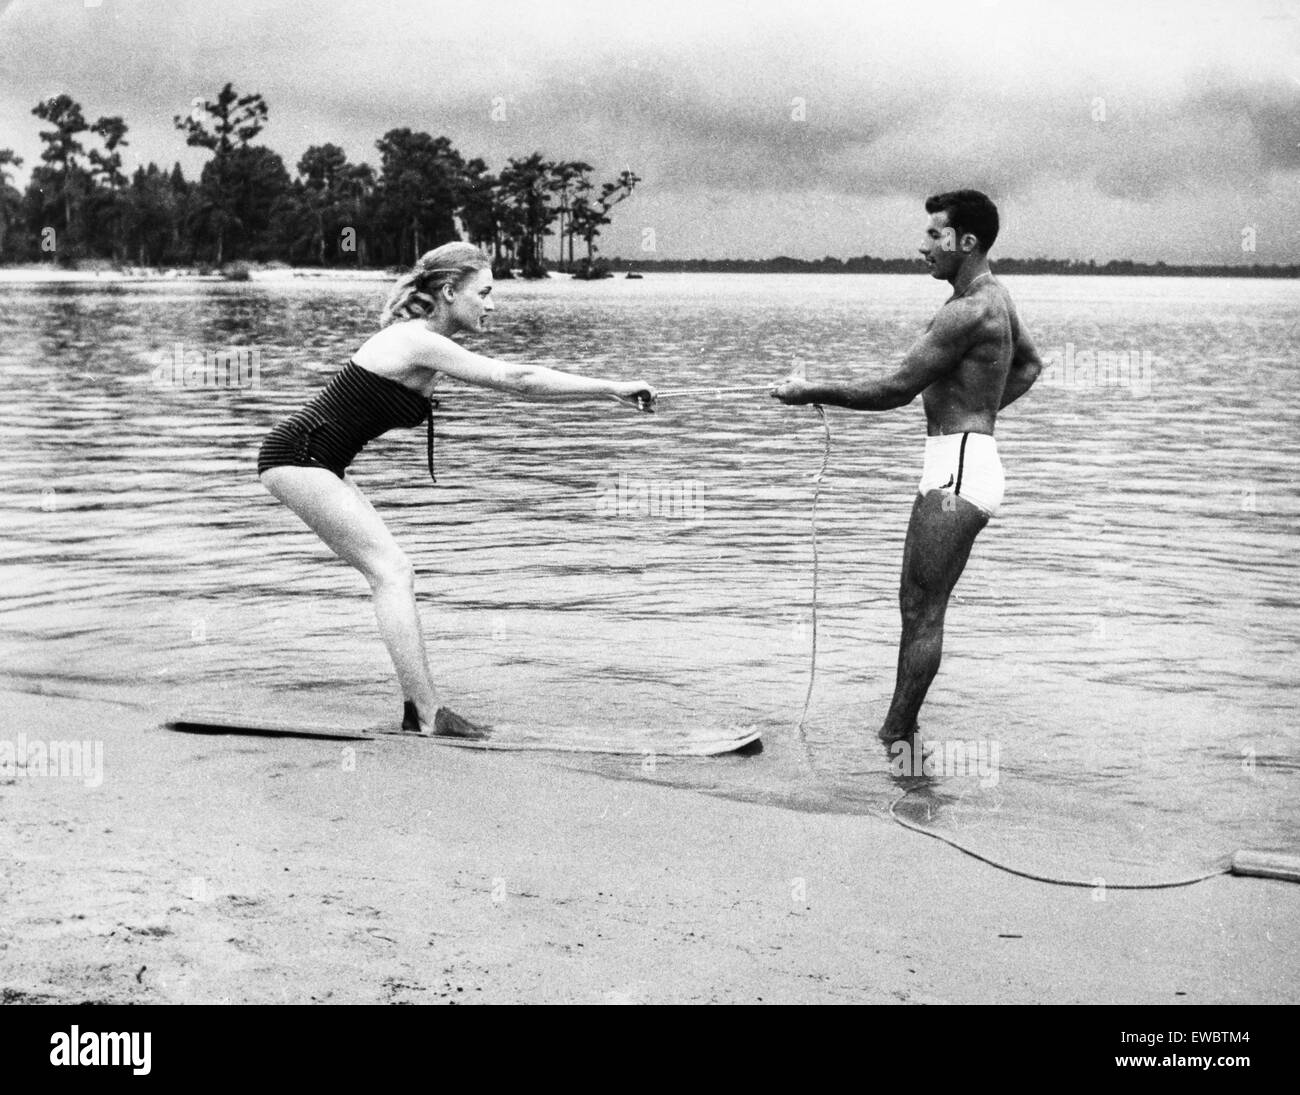 Leçon de ski nautique sur la plage, 1957 Banque D'Images